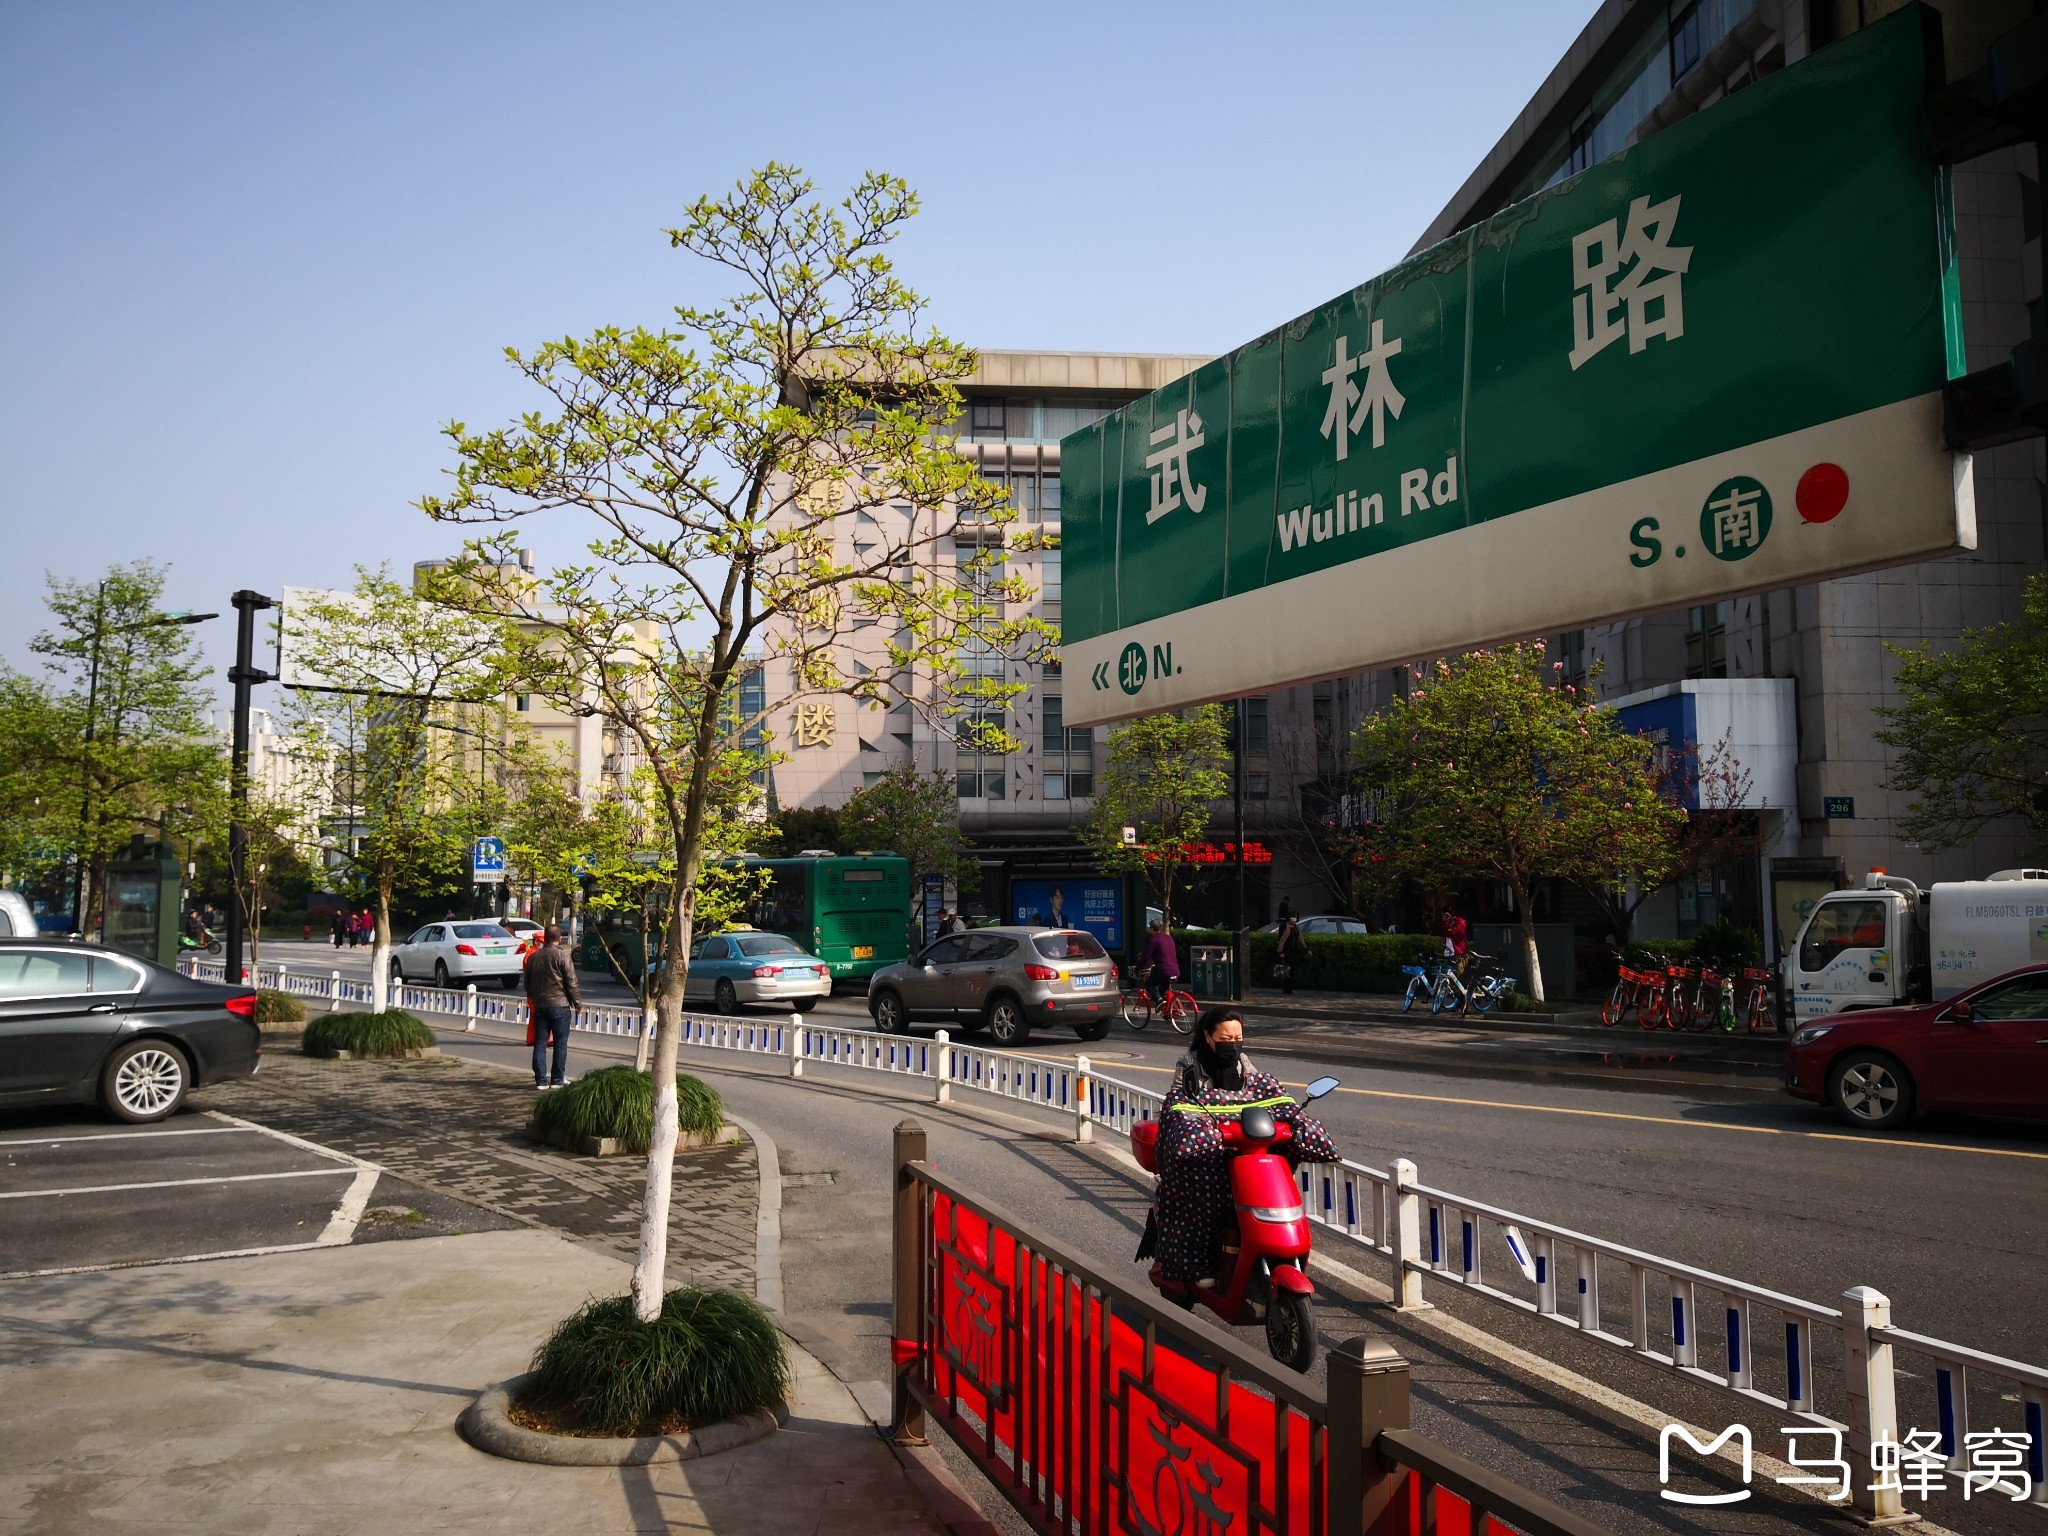 杭州市下城区的历史文化街区"武林路"----走遍杭州